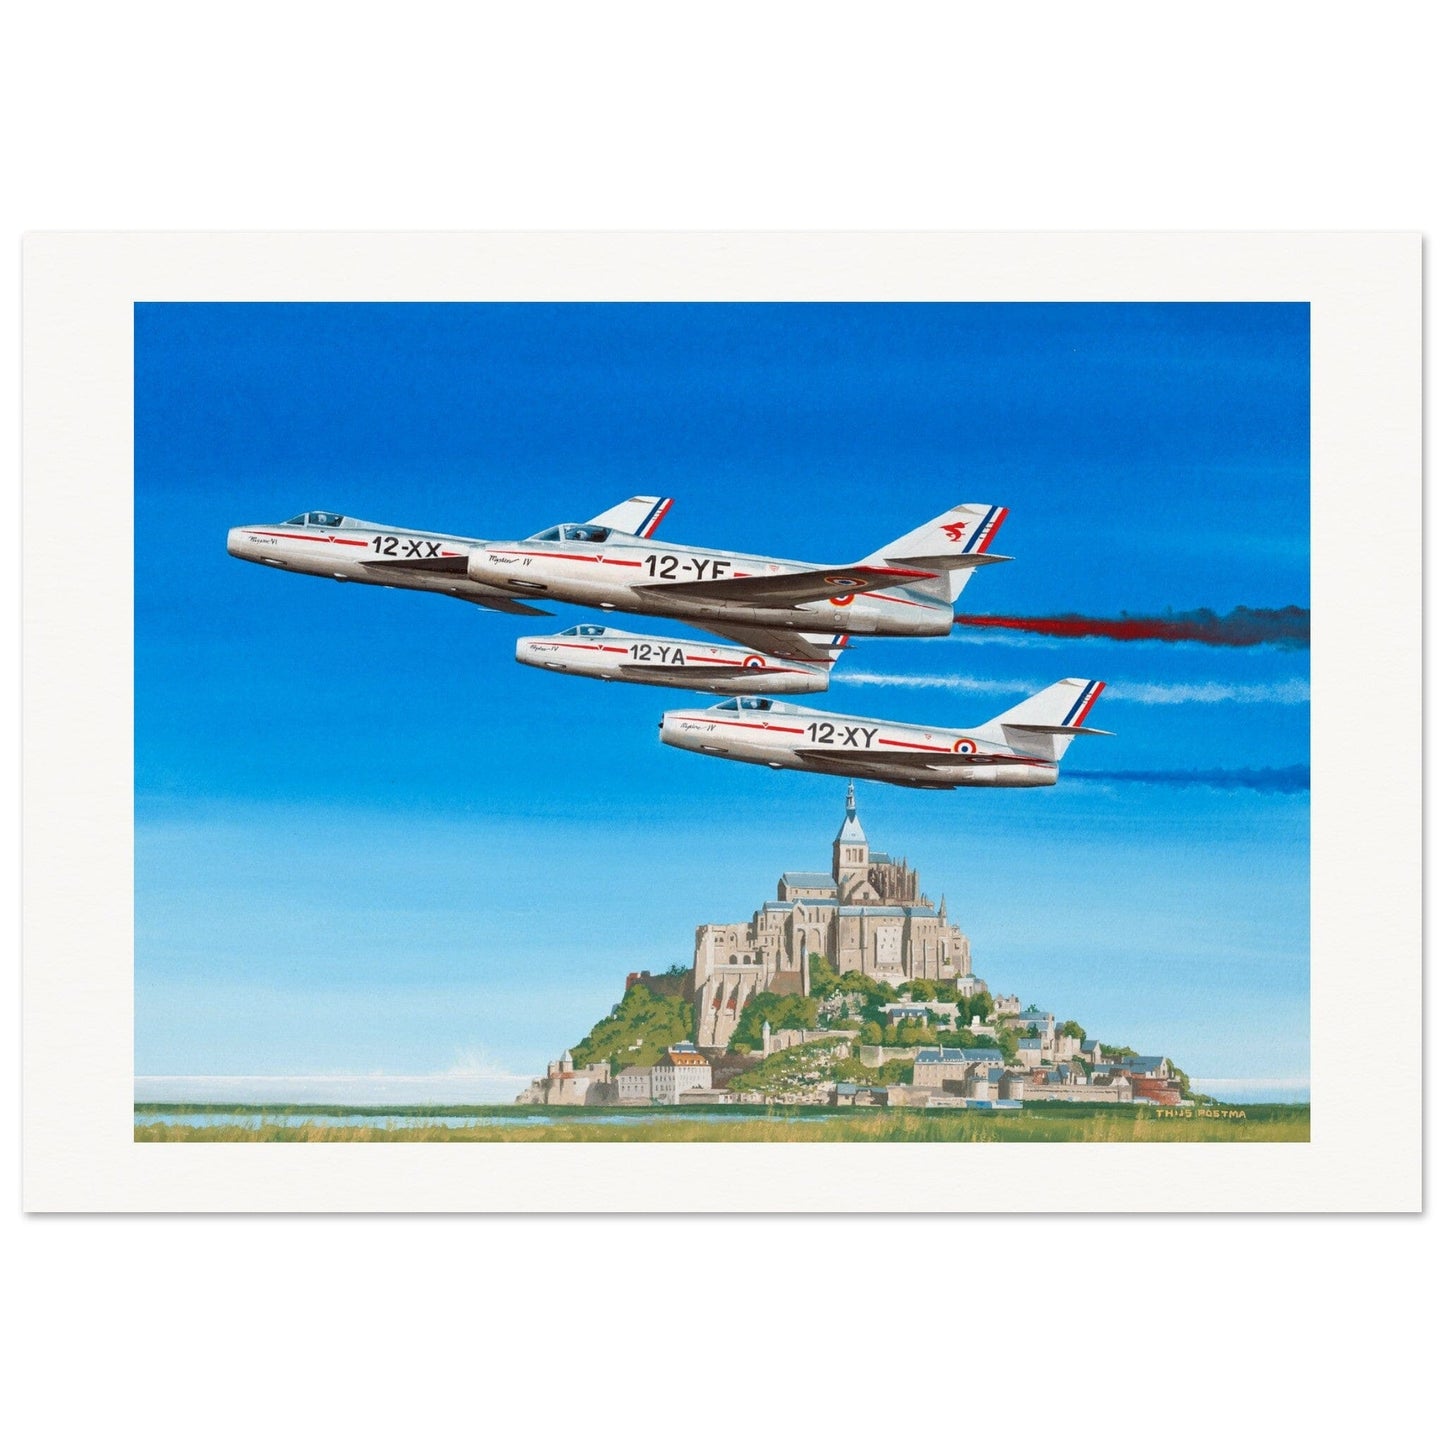 Thijs Postma - Poster - Dassault Mystère IV Patrouille de France Poster Only TP Aviation Art 70x100 cm / 28x40″ 